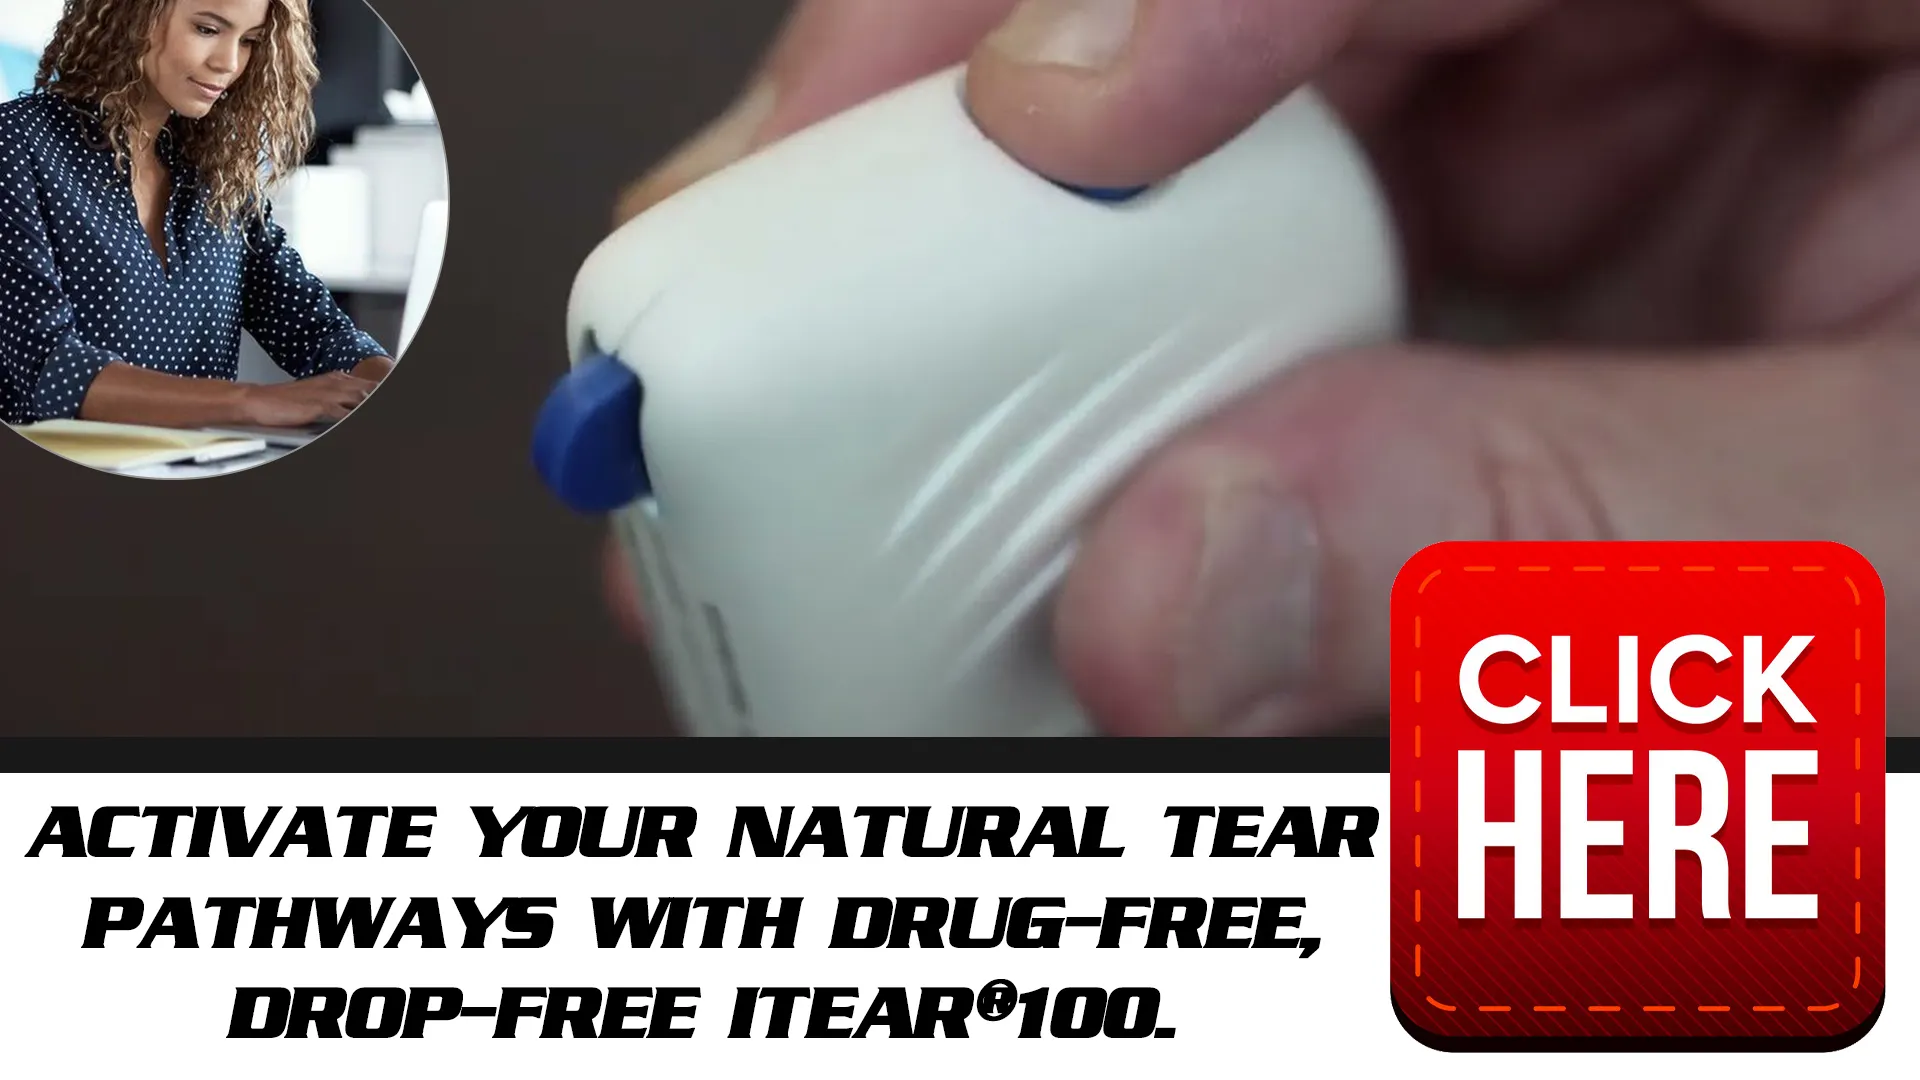 How iTEAR100 Enhances Natural Tear Production